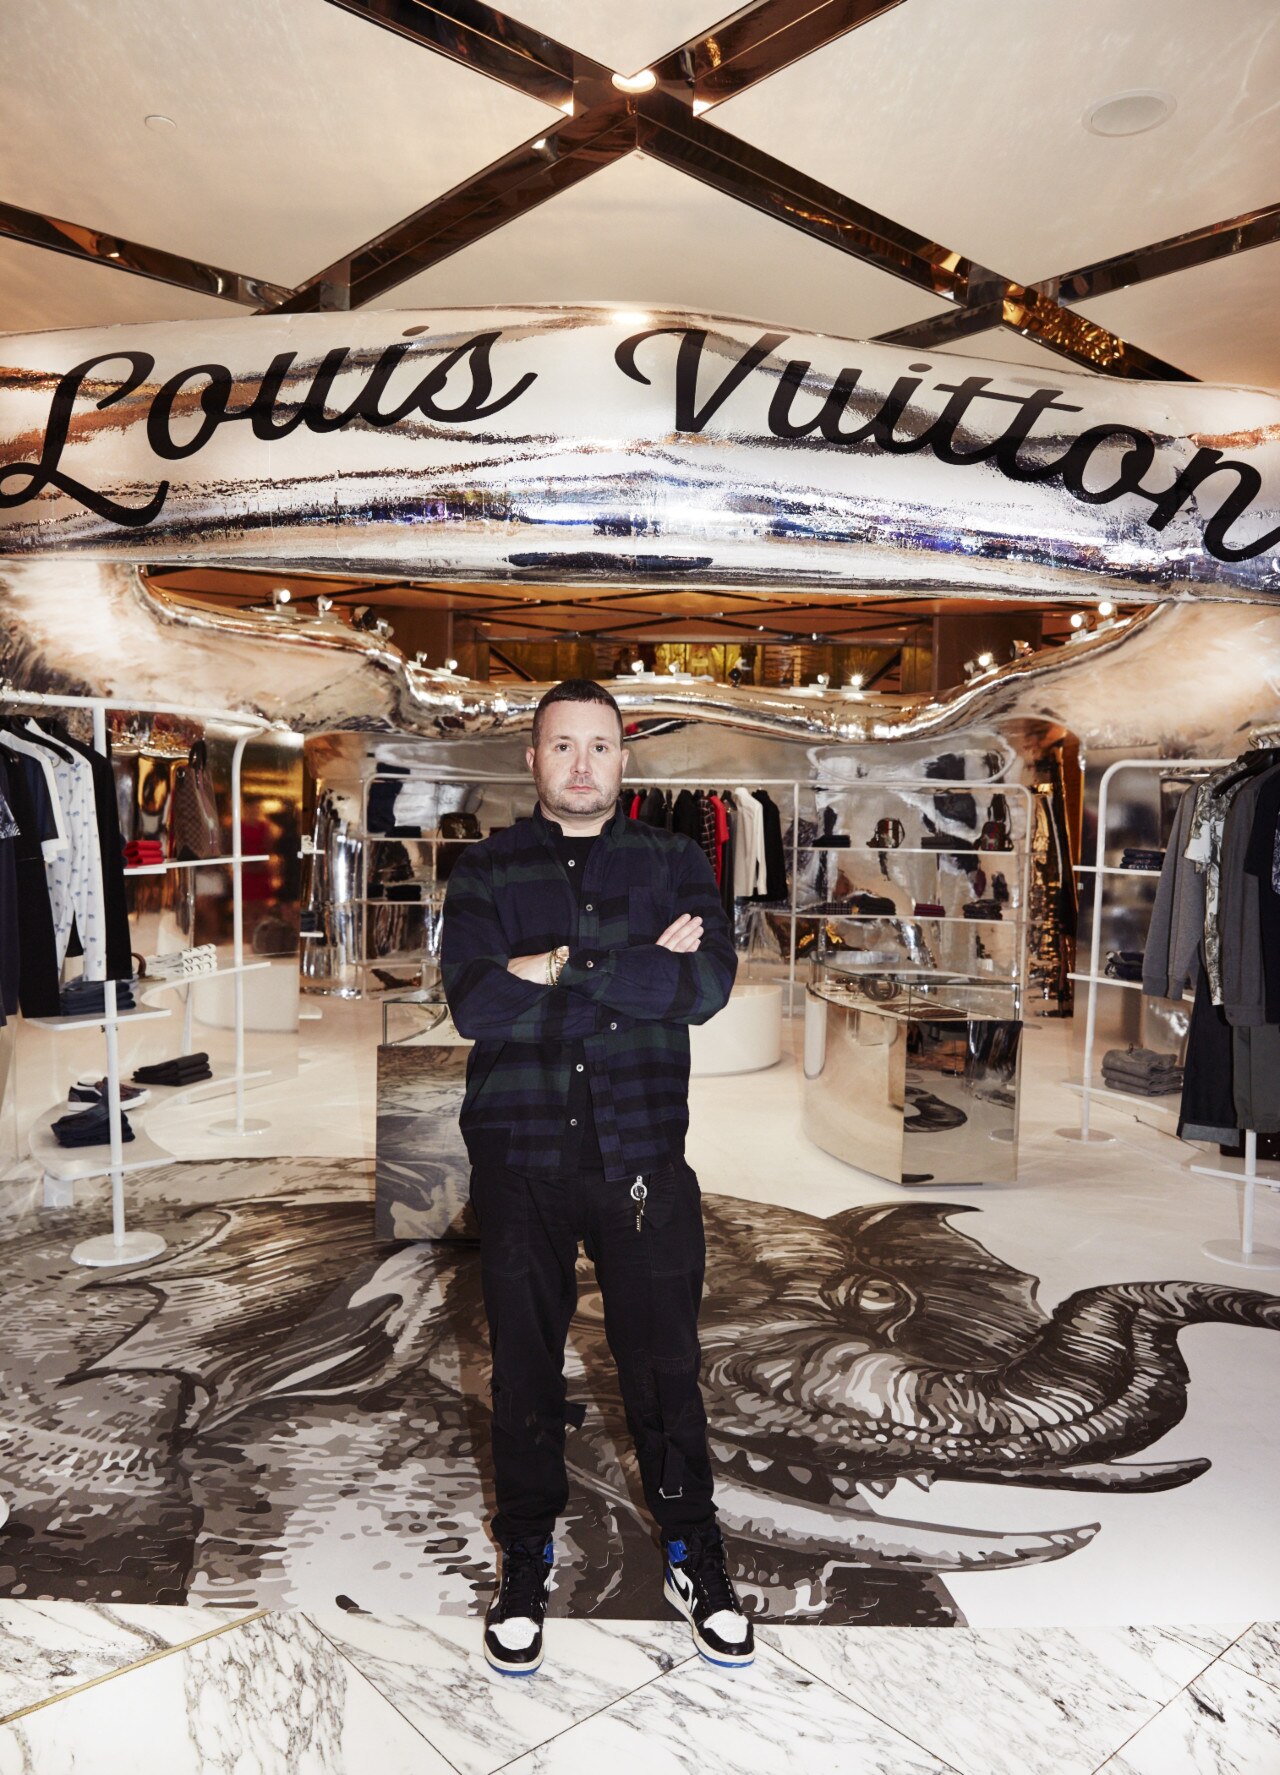 Inside Louis Vuitton's Sydney menswear pop-up store - Vogue Australia